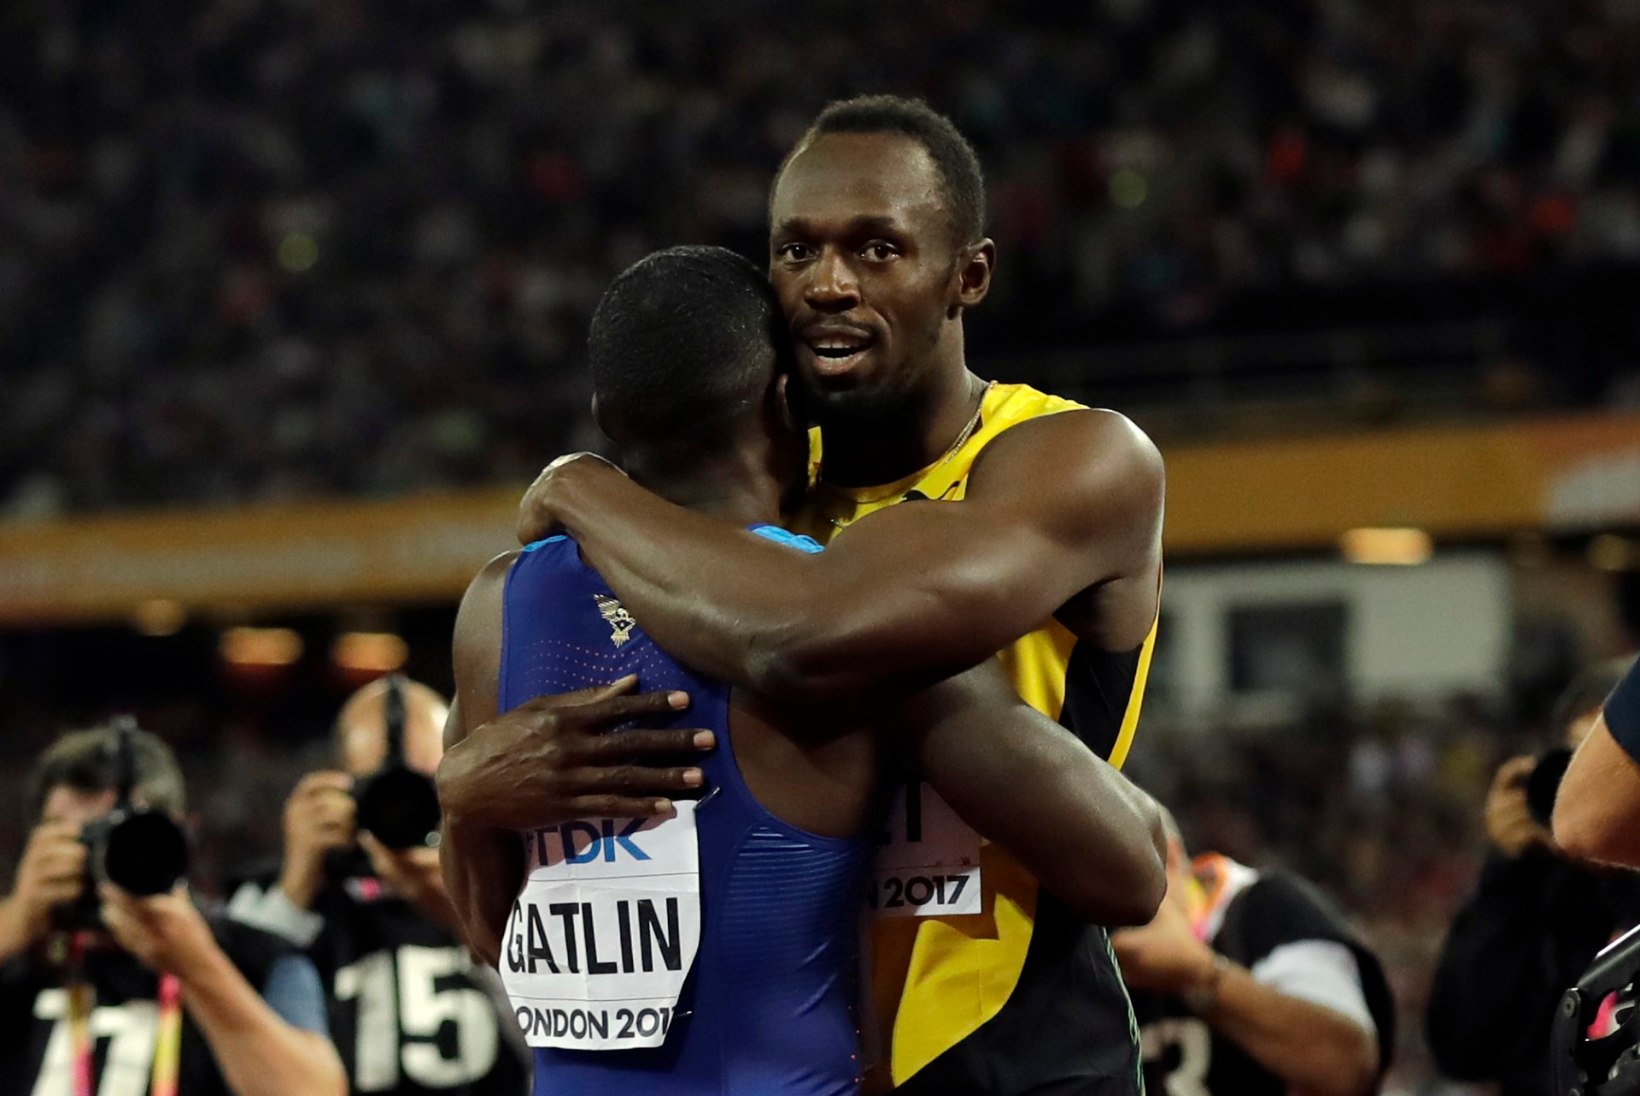 Briti meedia: Bolt kaotas kergejõustiku suurimale häbiplekile! Gatlin: Bolt ütles, et väärin seda võitu